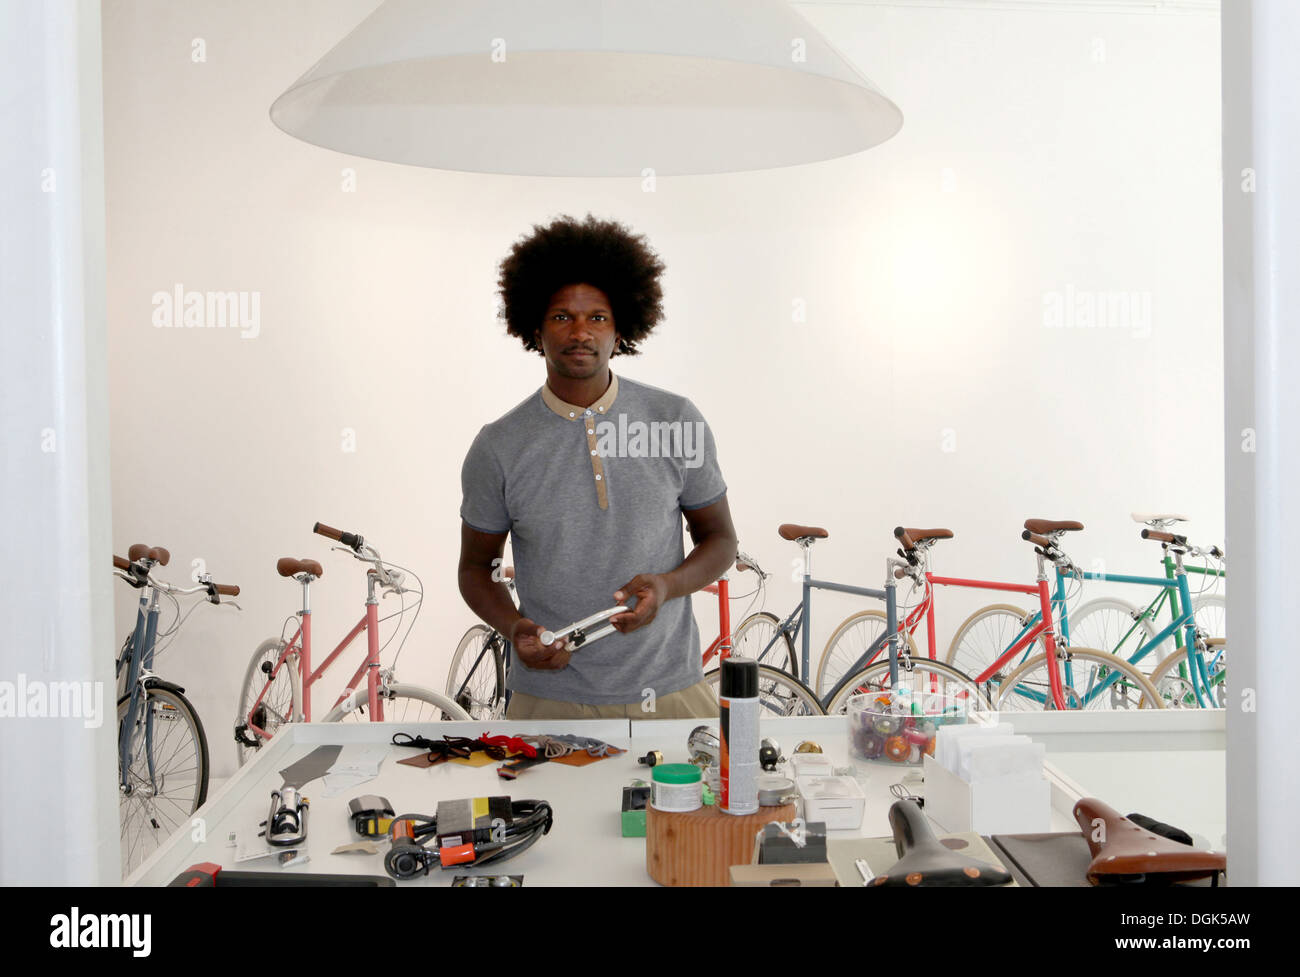 Man en atelier de réparation de vélos Banque D'Images